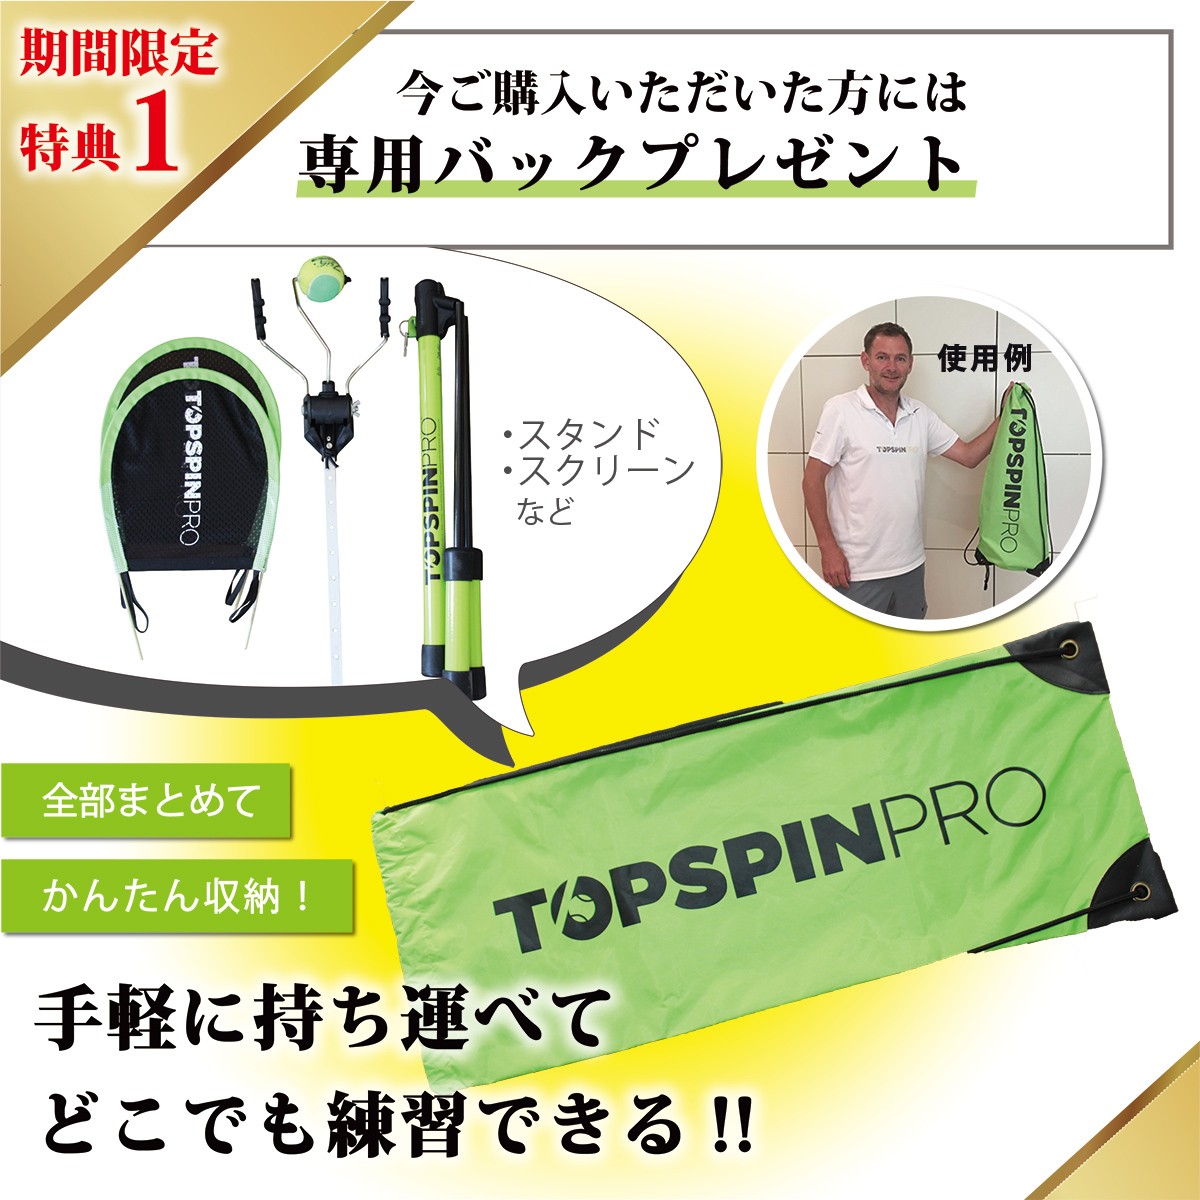 テニス 練習器具 練習機 硬式テニス TopspinPro トップスピンプロ